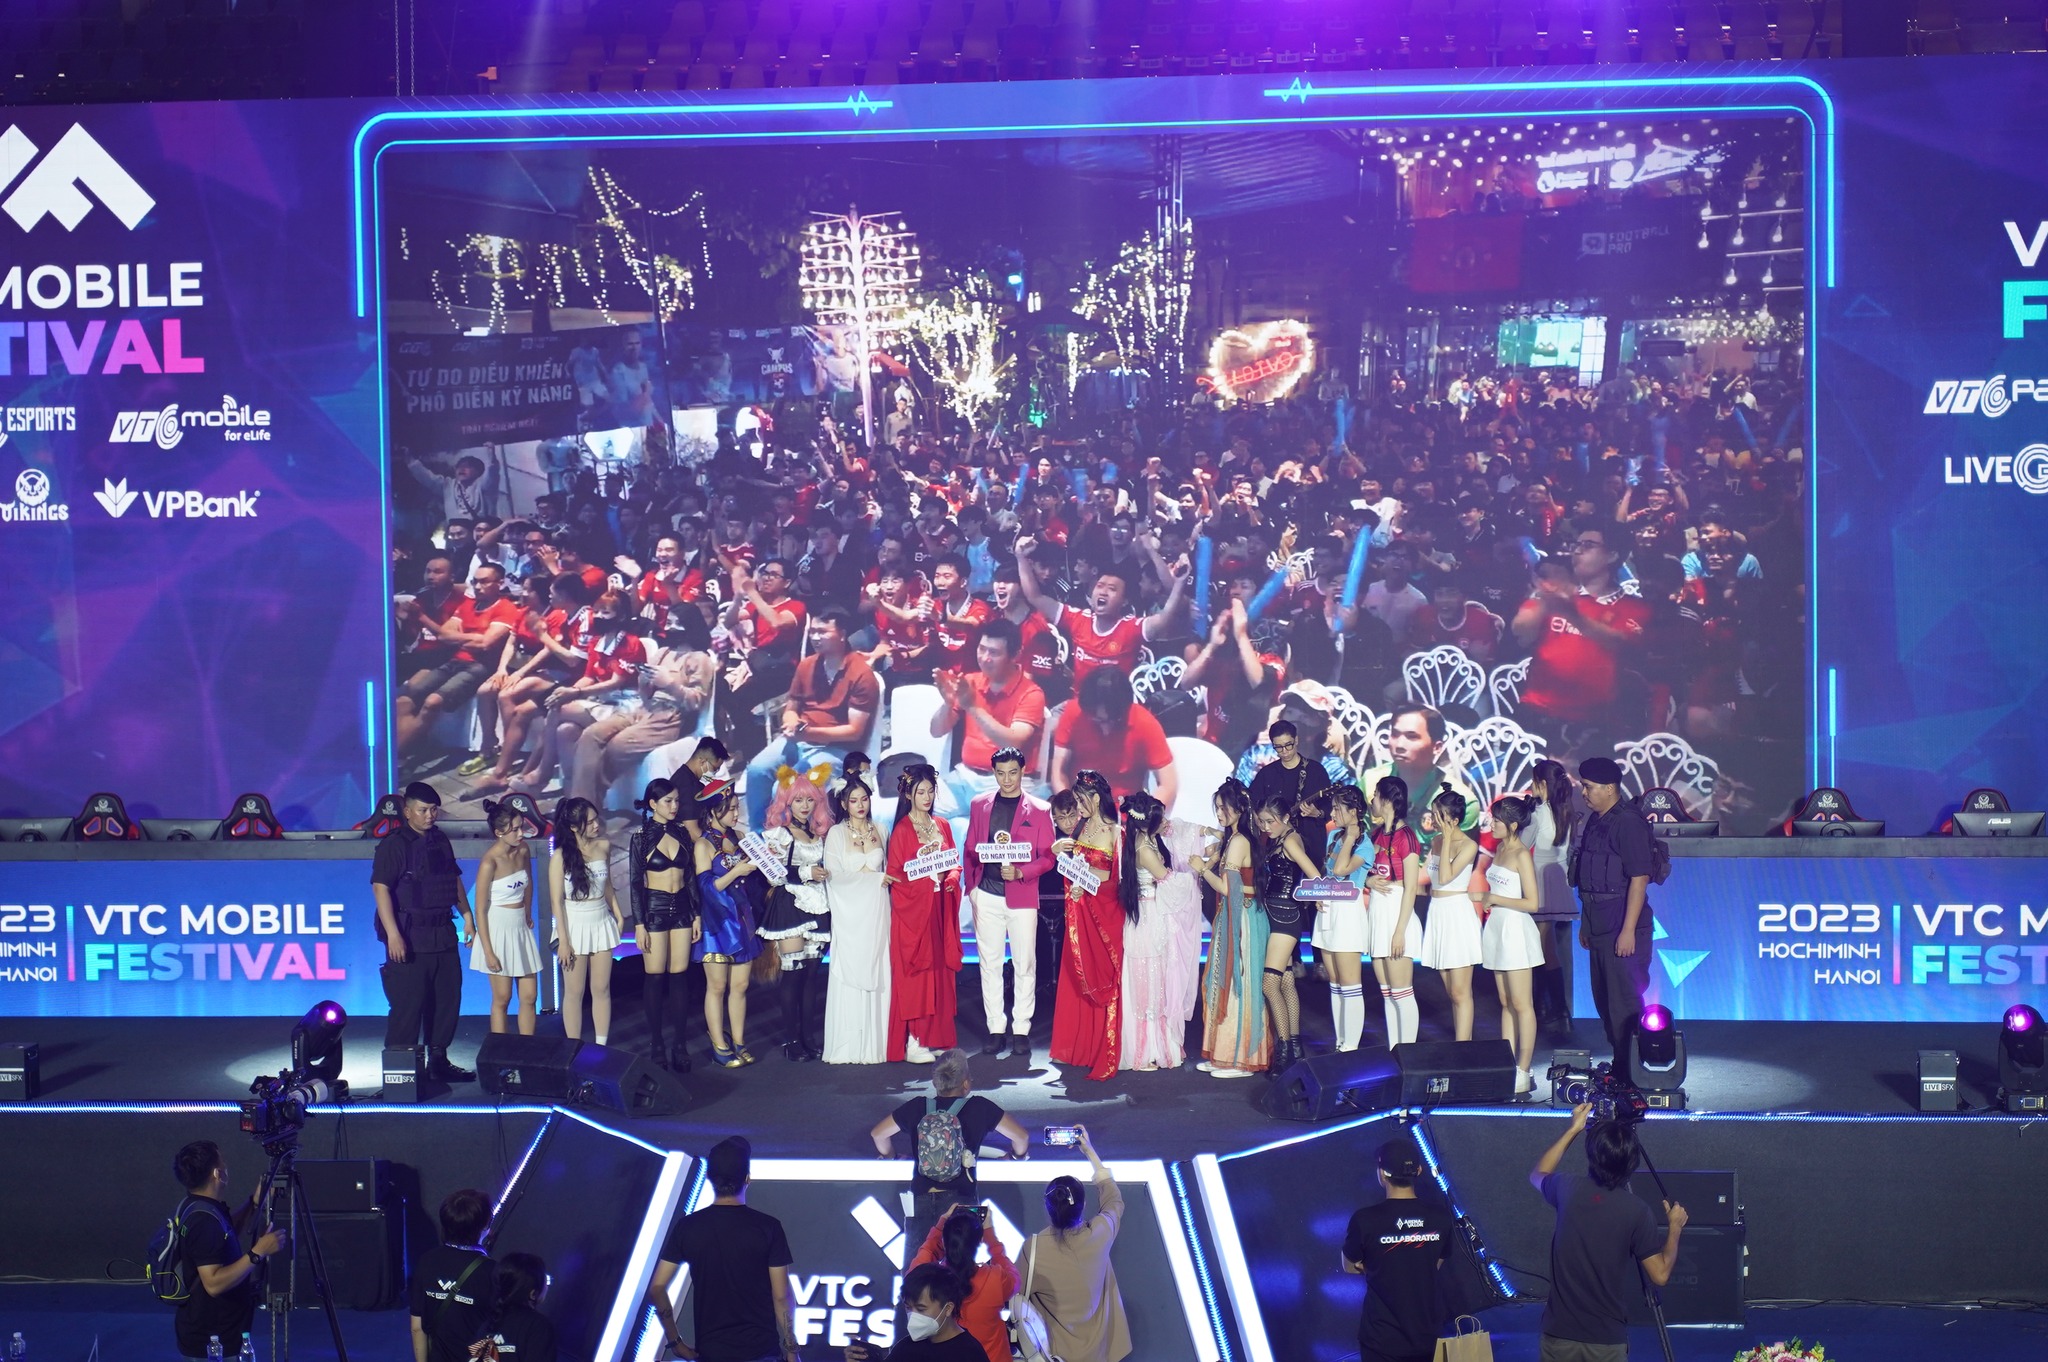 VTC MOBILE FESTIVAL VỚI HƠN 4.000 GAME THỦ THAM GIA - “ĐẠI TIỆC” TRI ÂN GIÀU CẢM XÚC